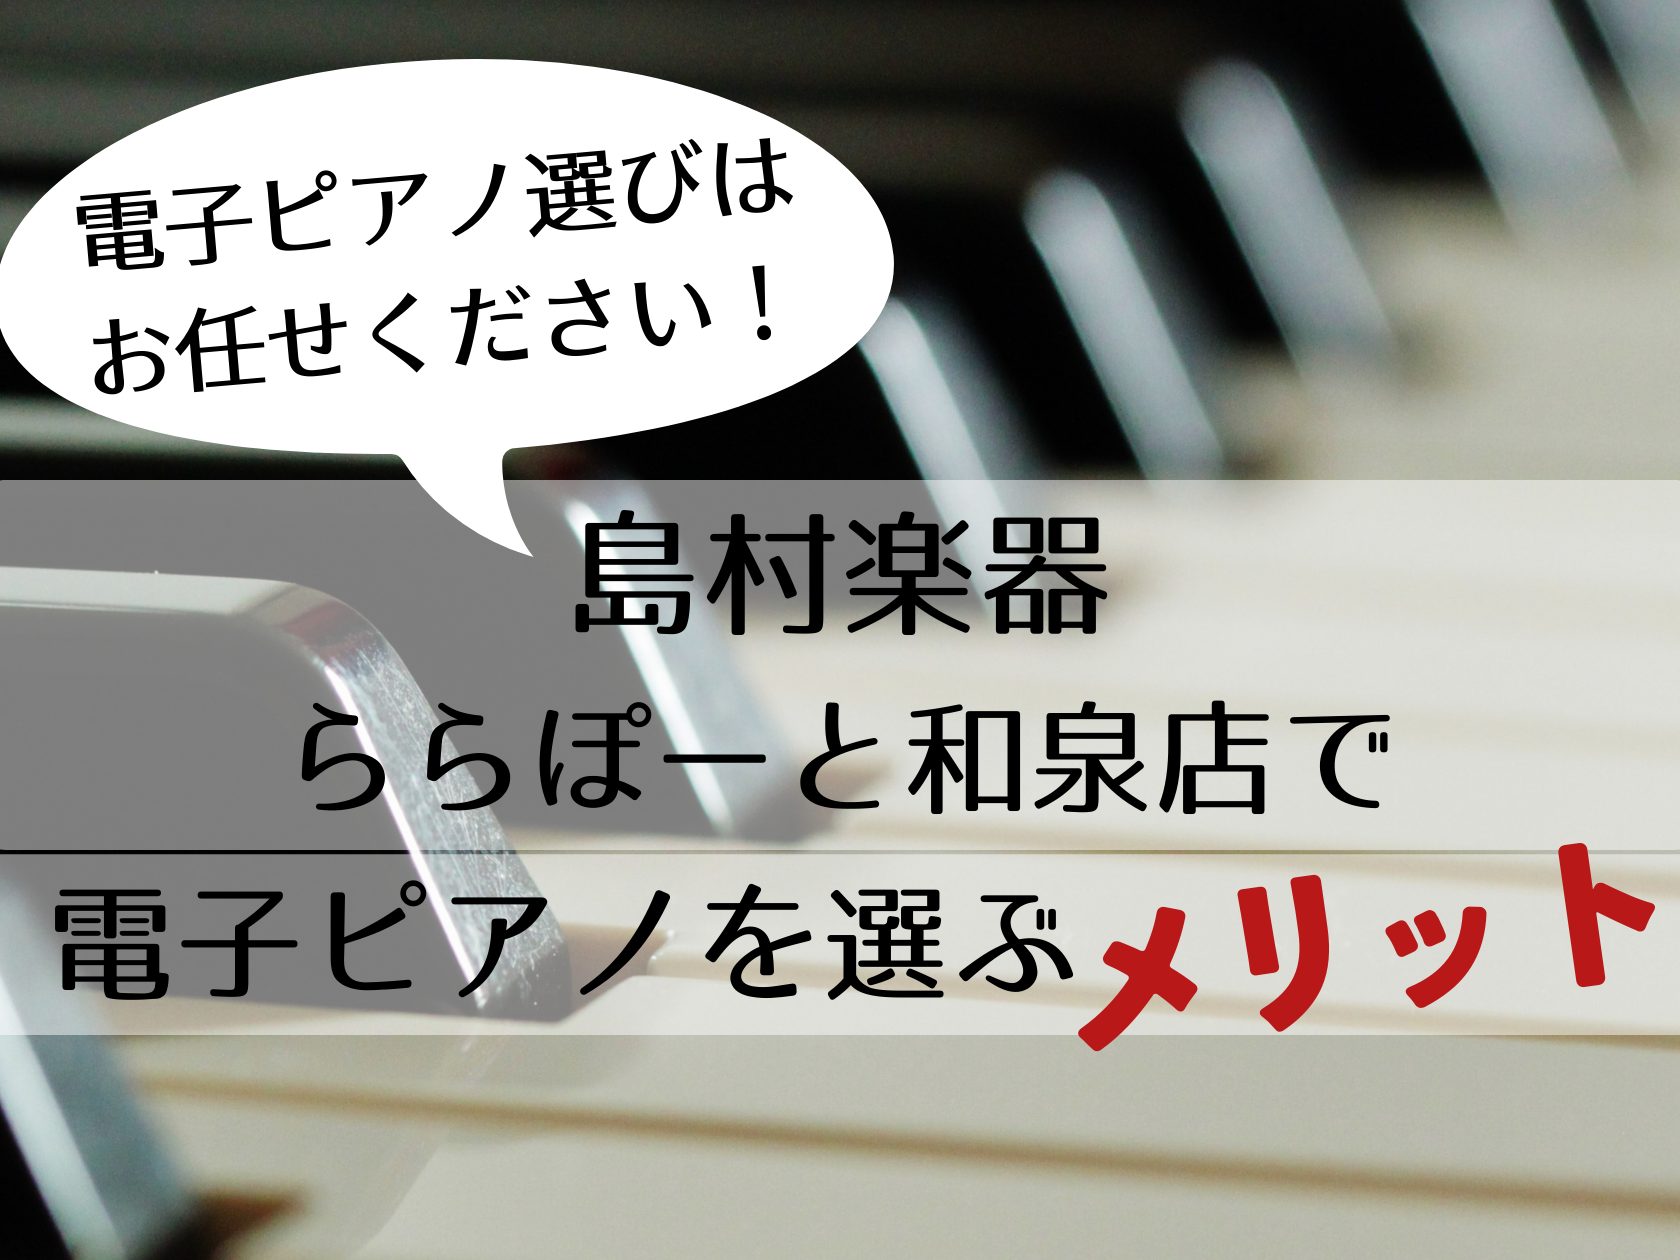 みなさまこんにちは！数多くのWEBページの中、こちらのページを開いていただいてありがとうございます。南大阪地域、和泉市で電子ピアノをご検討中の方必見！👀電子ピアノ選びは、当店へお任せください！！！【島村楽器ららぽーと和泉店】で電子ピアノを選ぶメリットをご紹介いたします♪ CONTENTSポイント❶専 […]